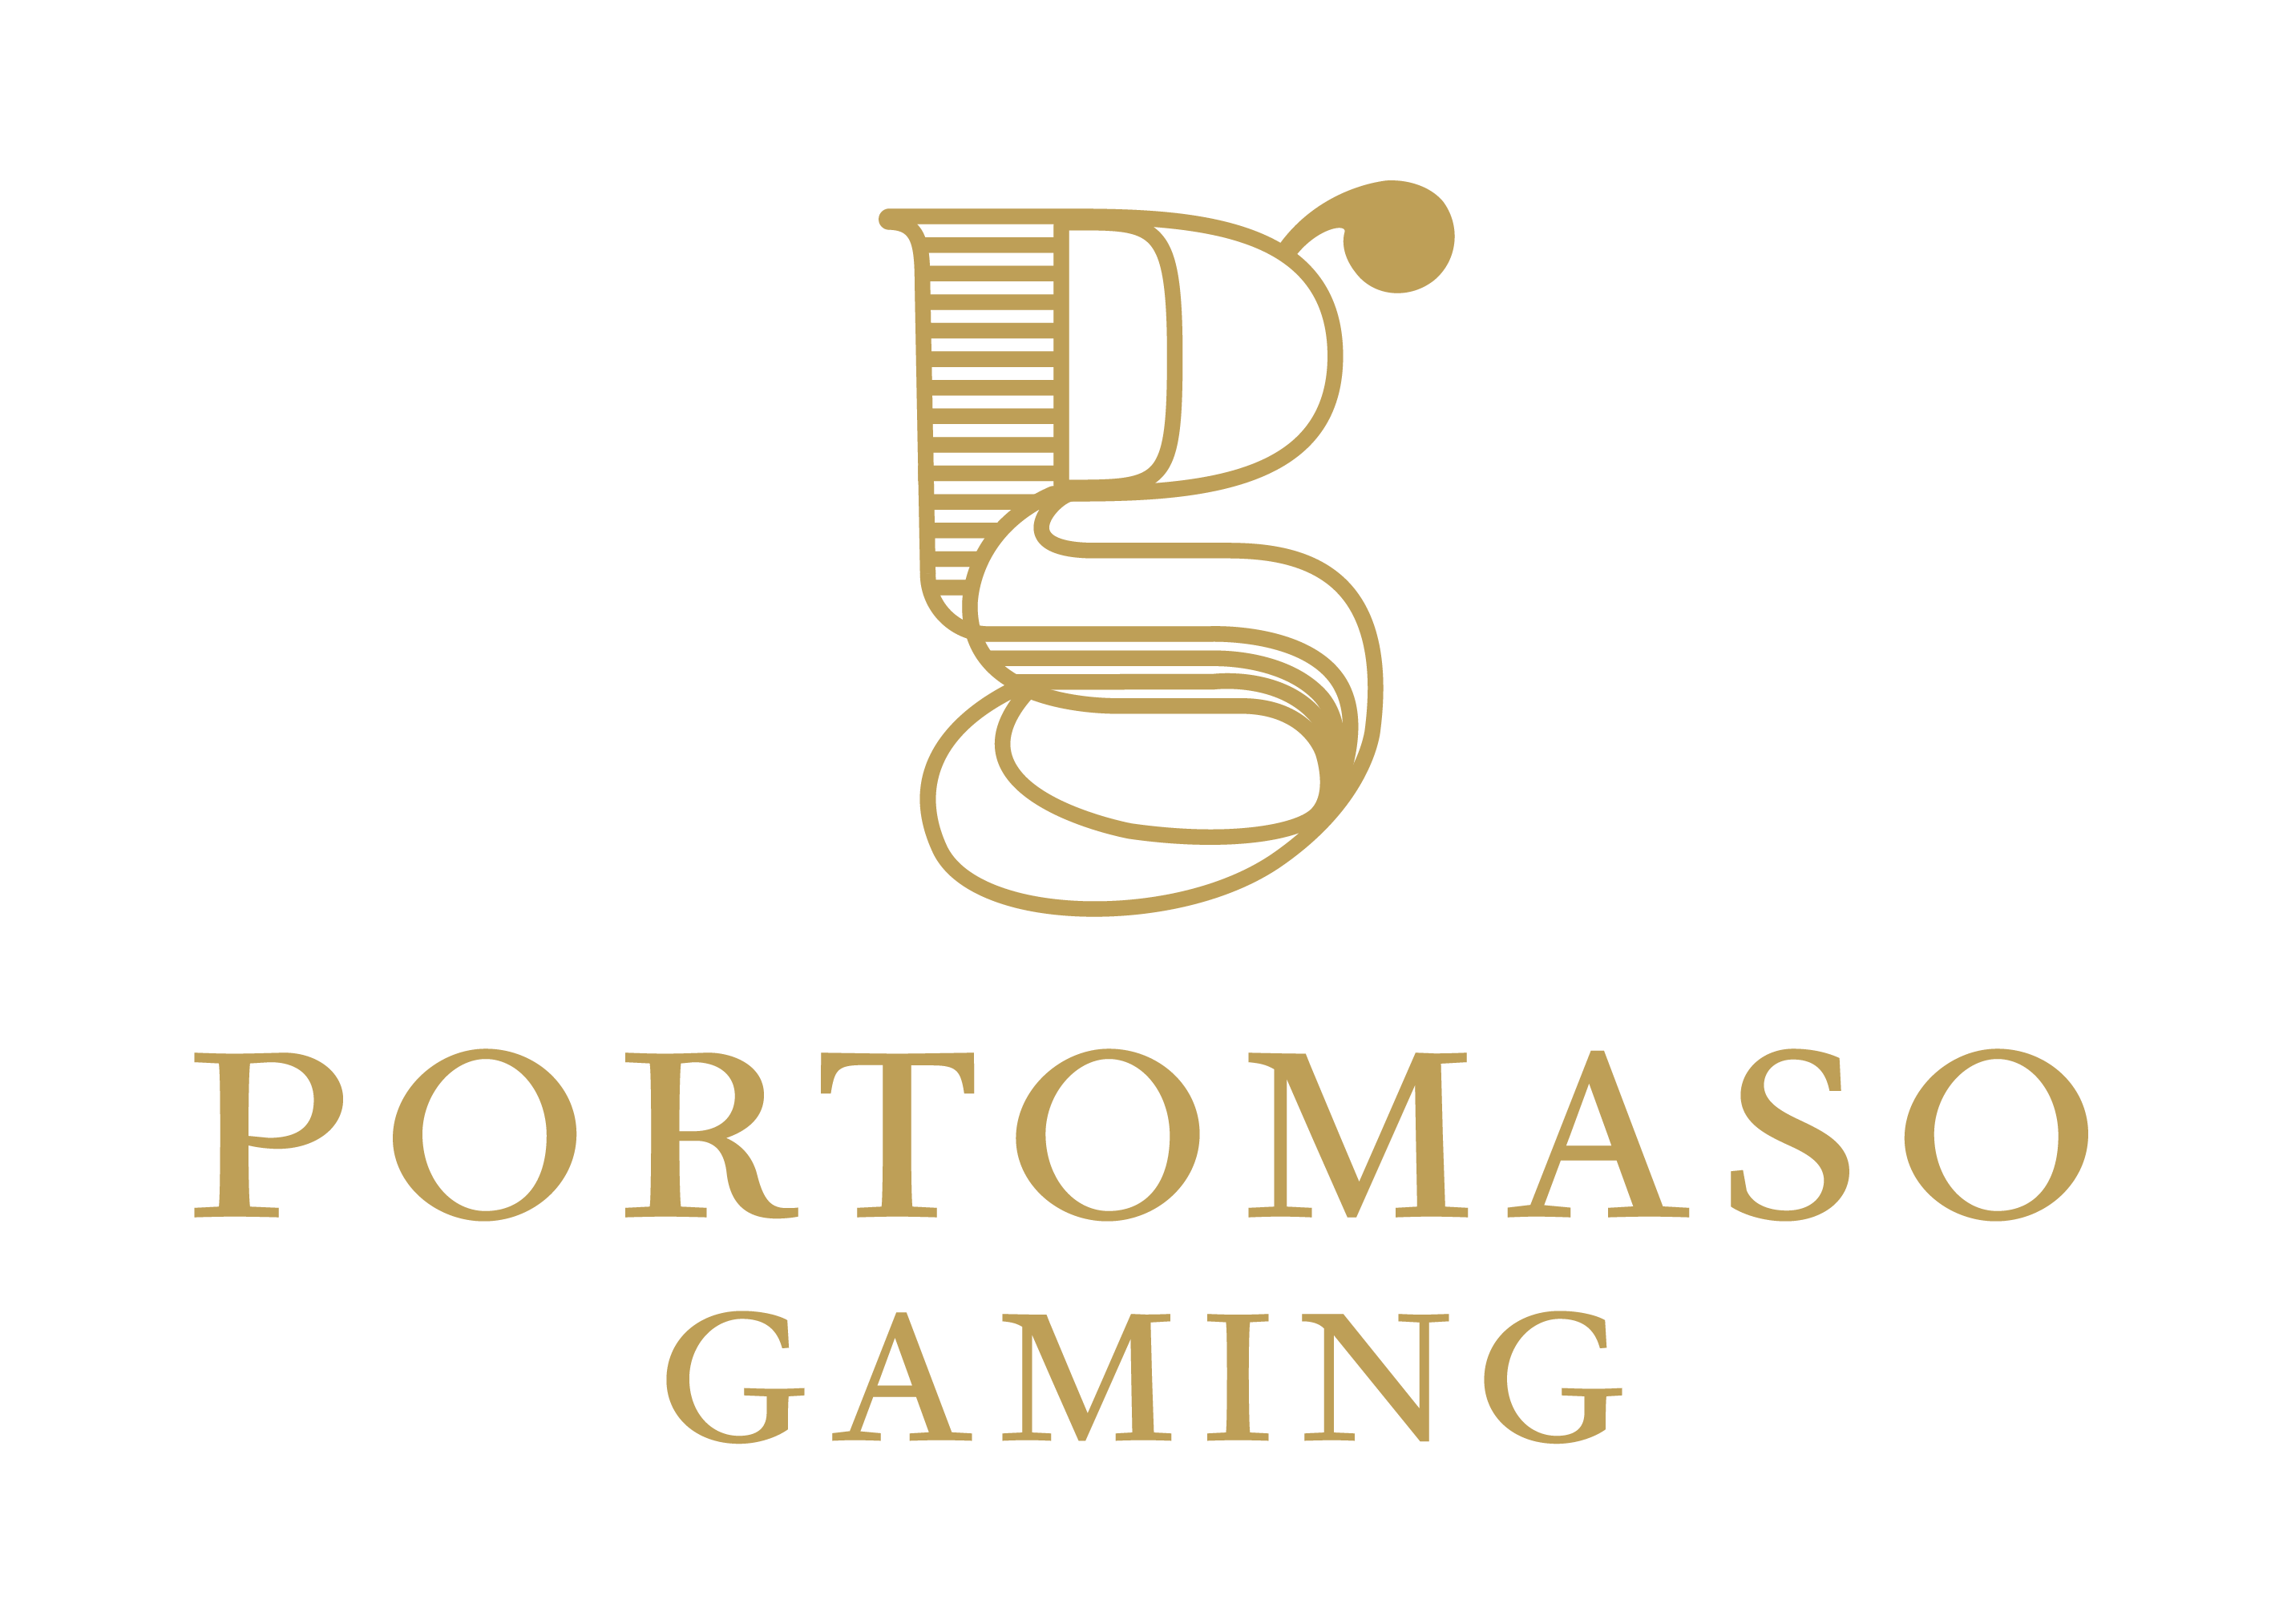 Portomaso Gaming jogos